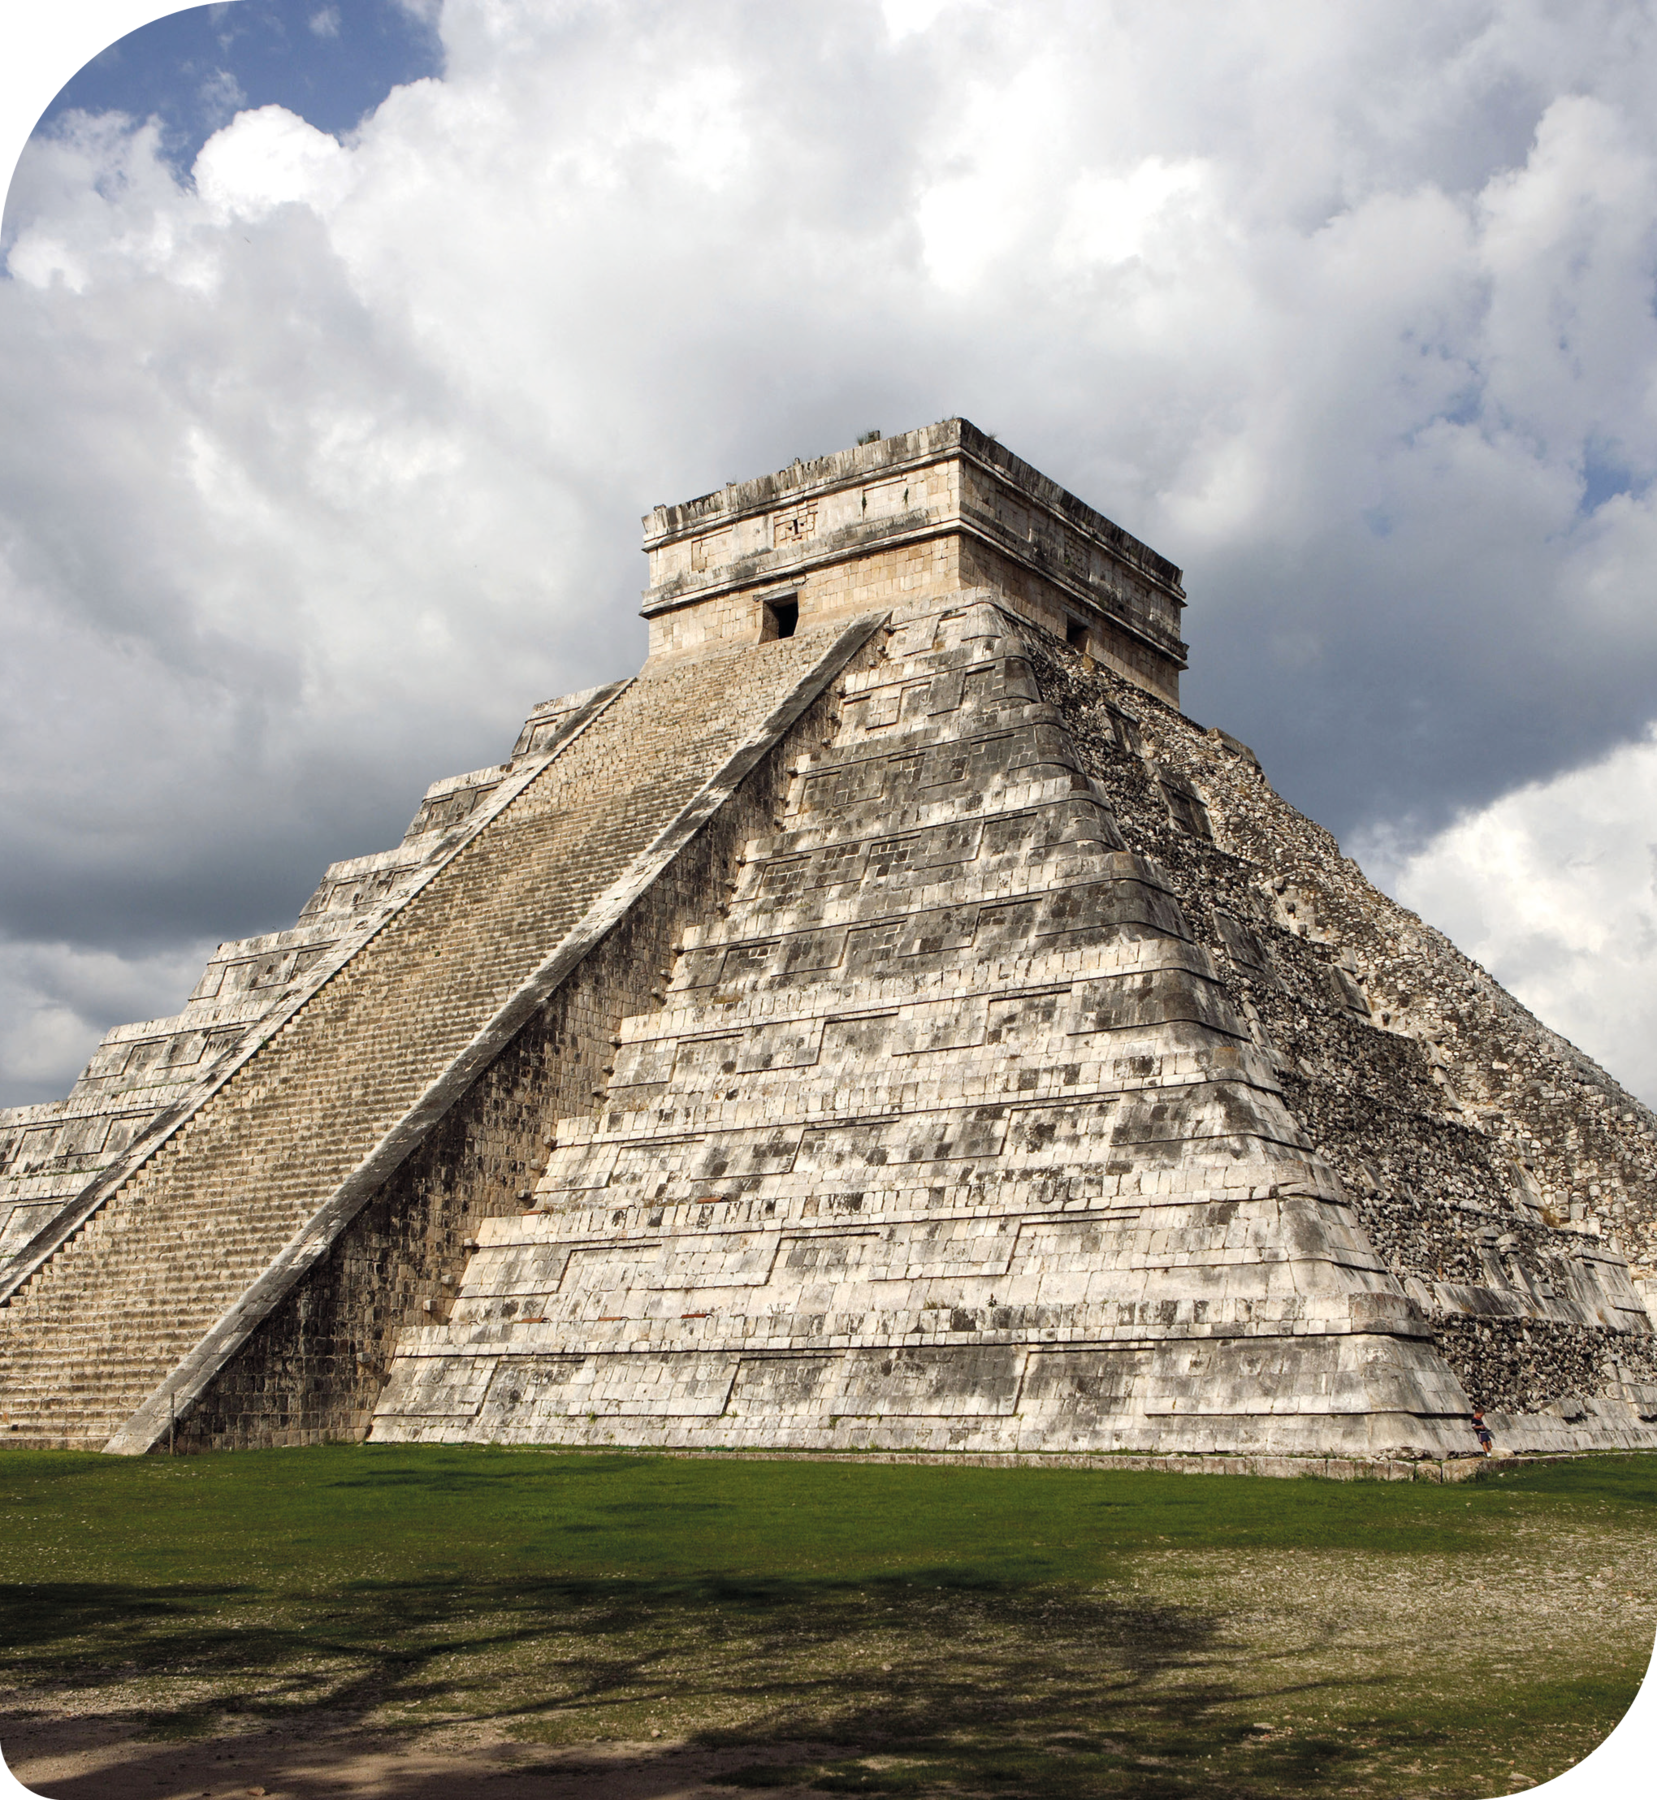 Fotografia. Uma pirâmide de pedra com uma escadaria central.